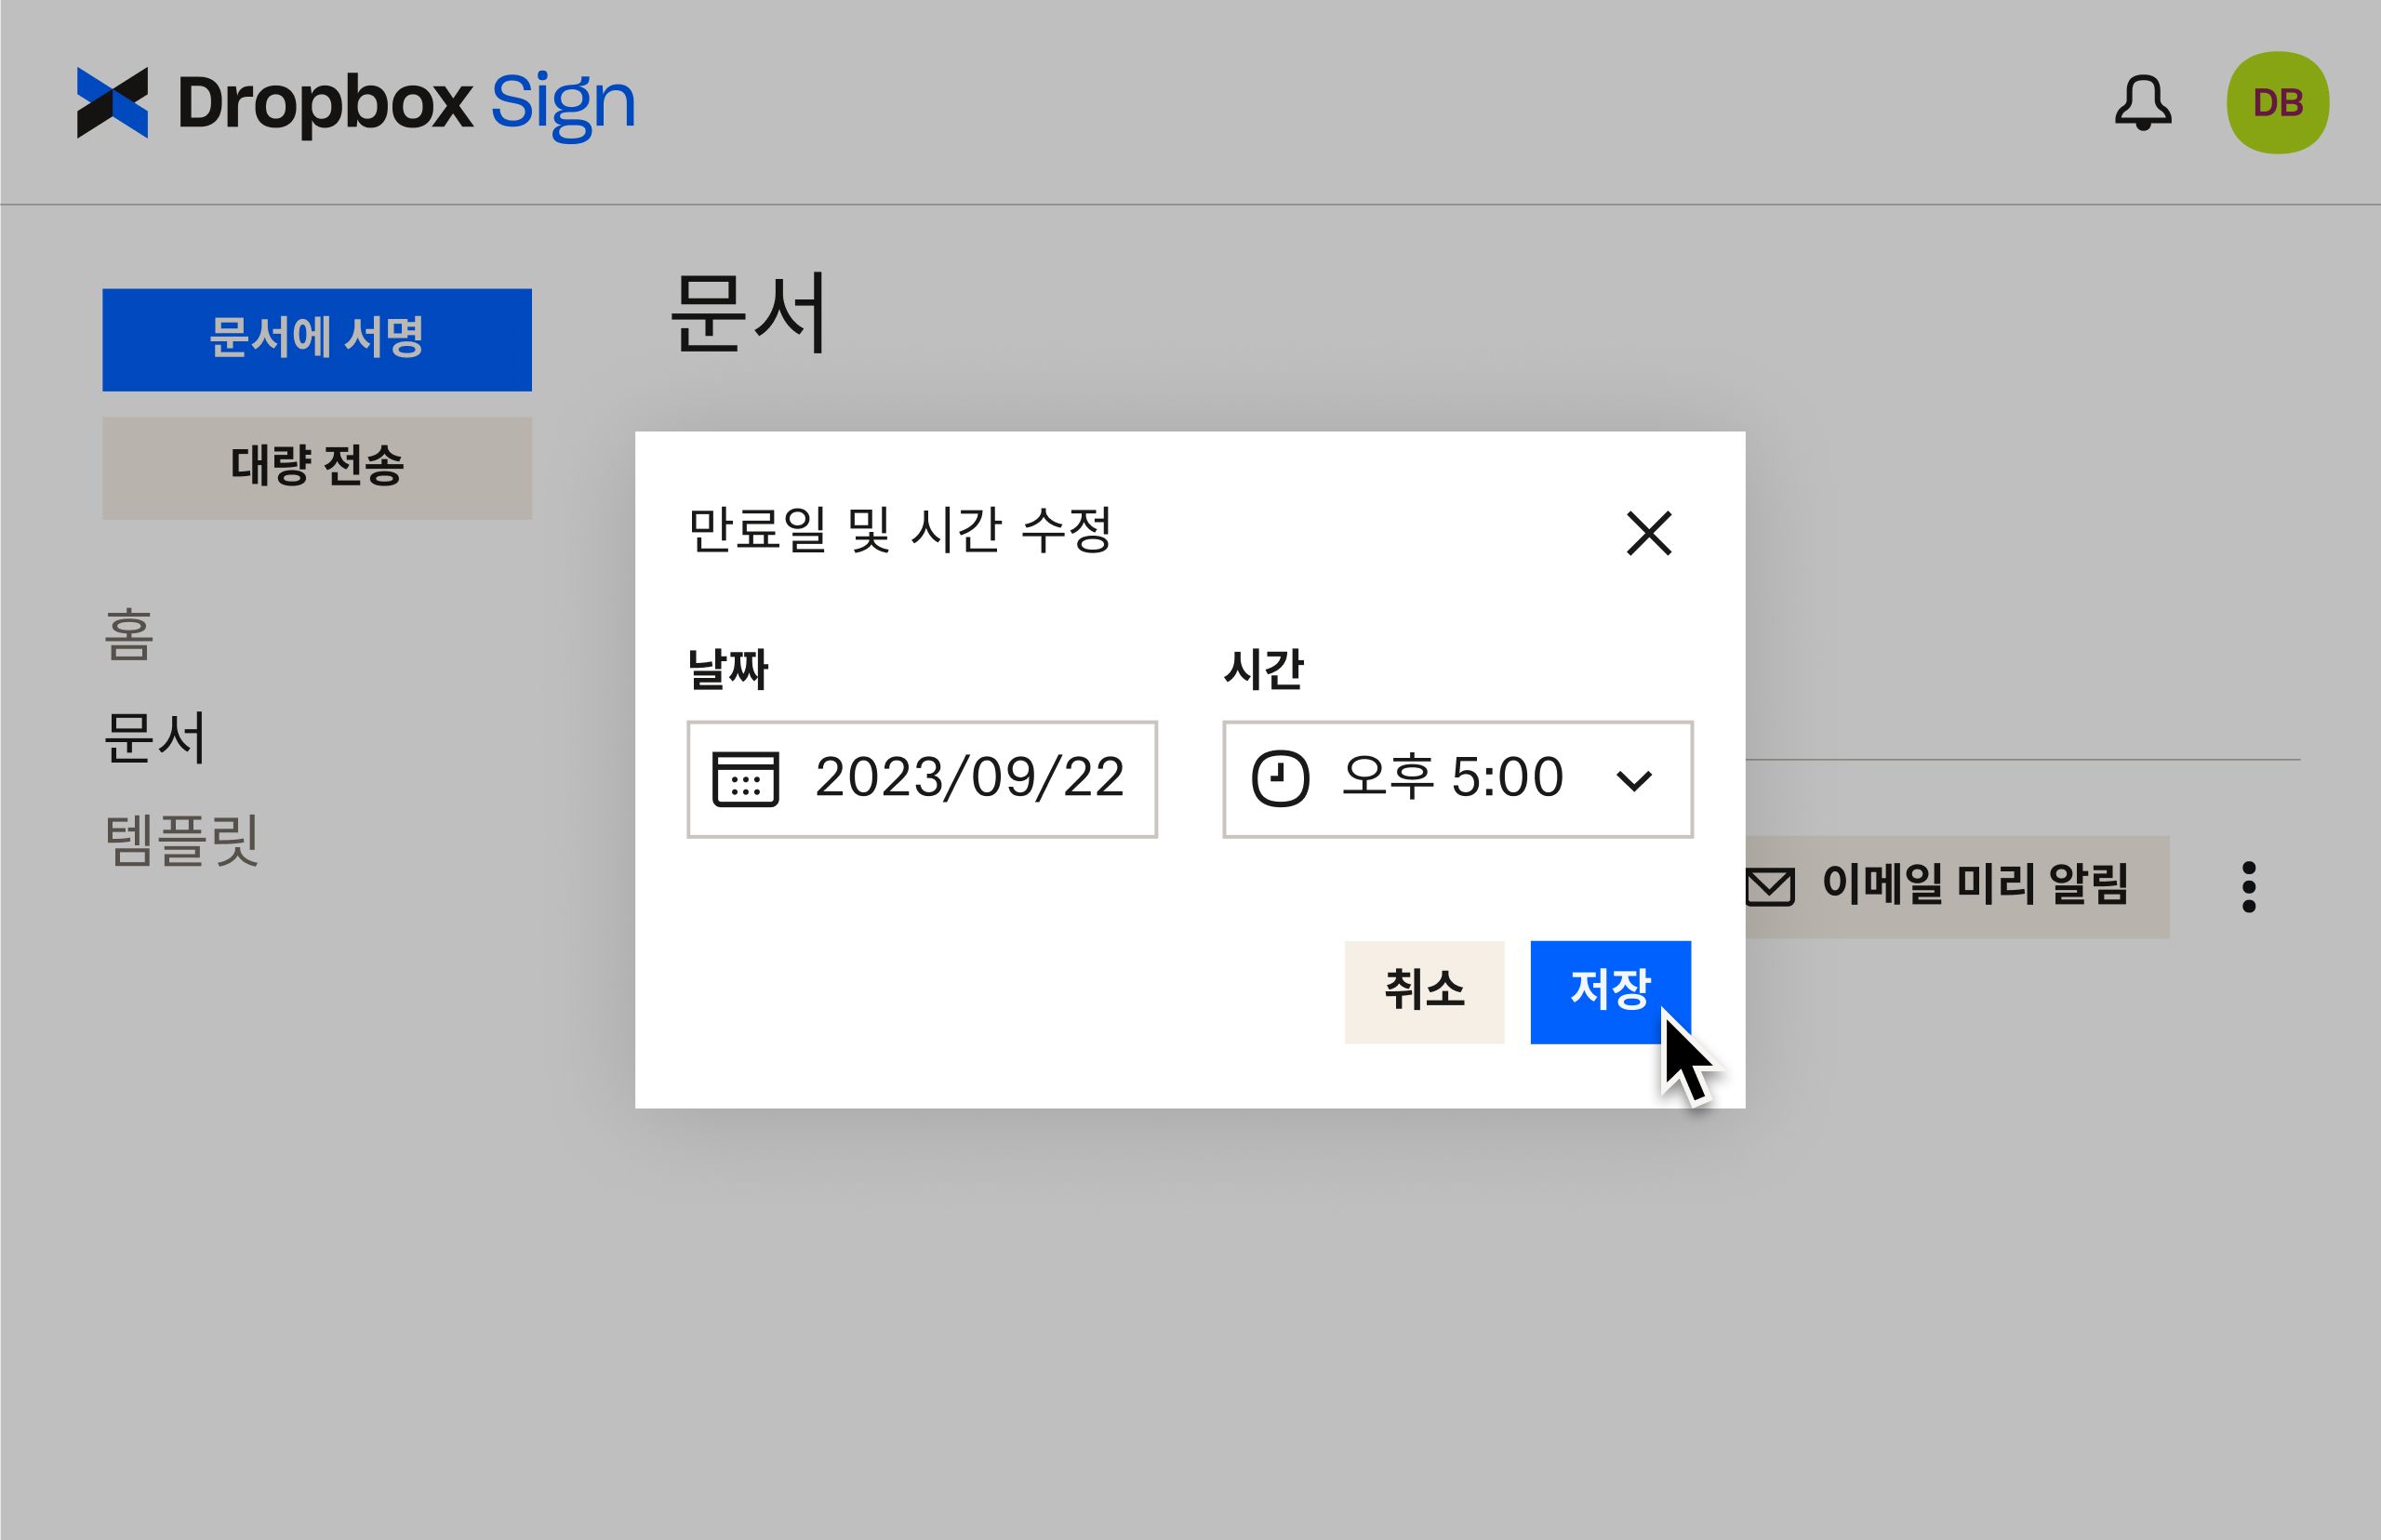 서명을 위해 문서를 전송한 후 만료일을 변경하는 방법을 보여주는 Dropbox Sign UI